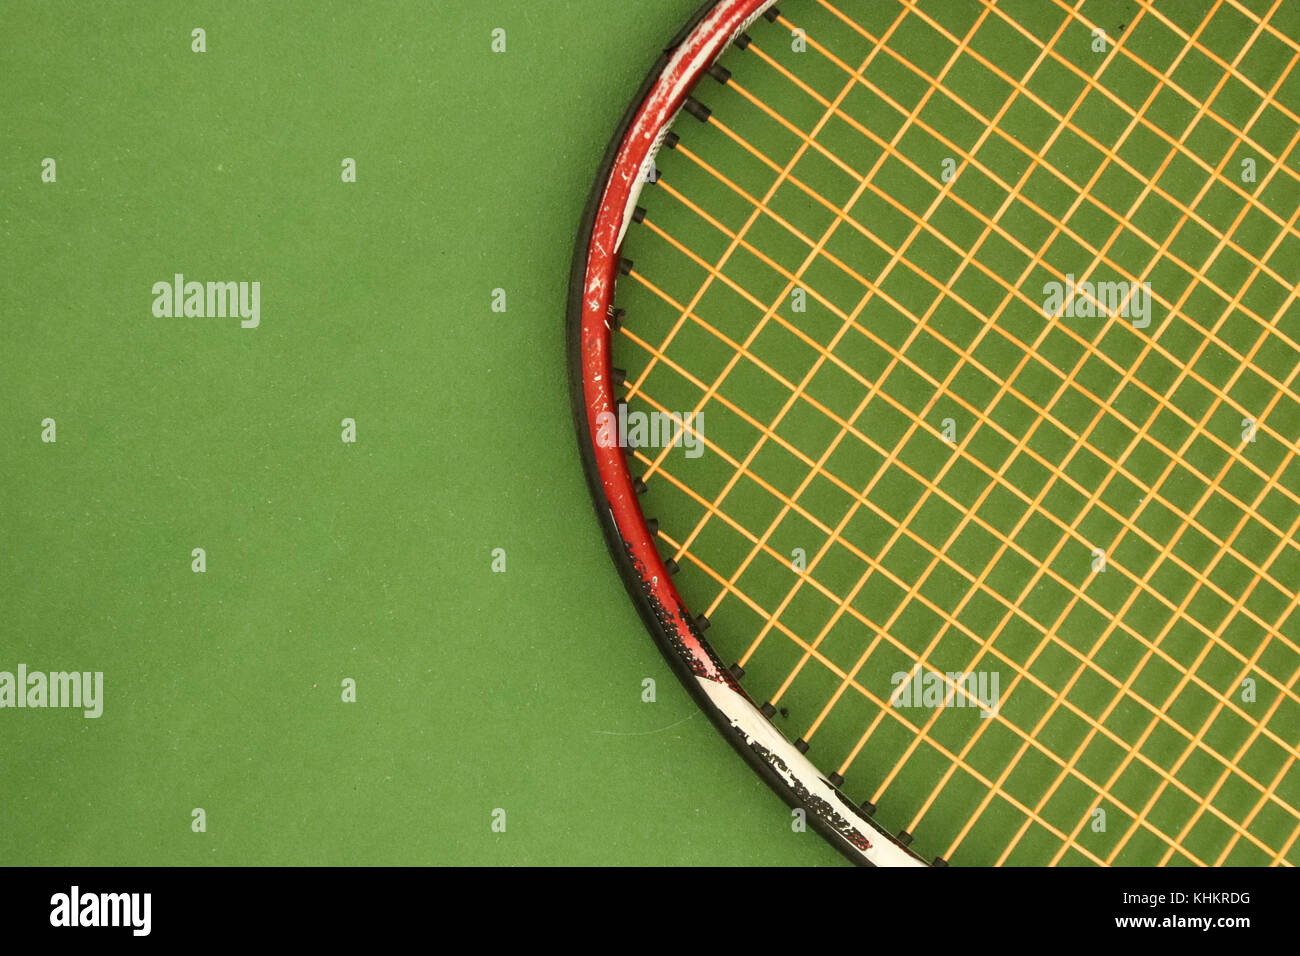 Tennisschläger auf dem Green Playground Court. Sporthintergrund. Stockfoto